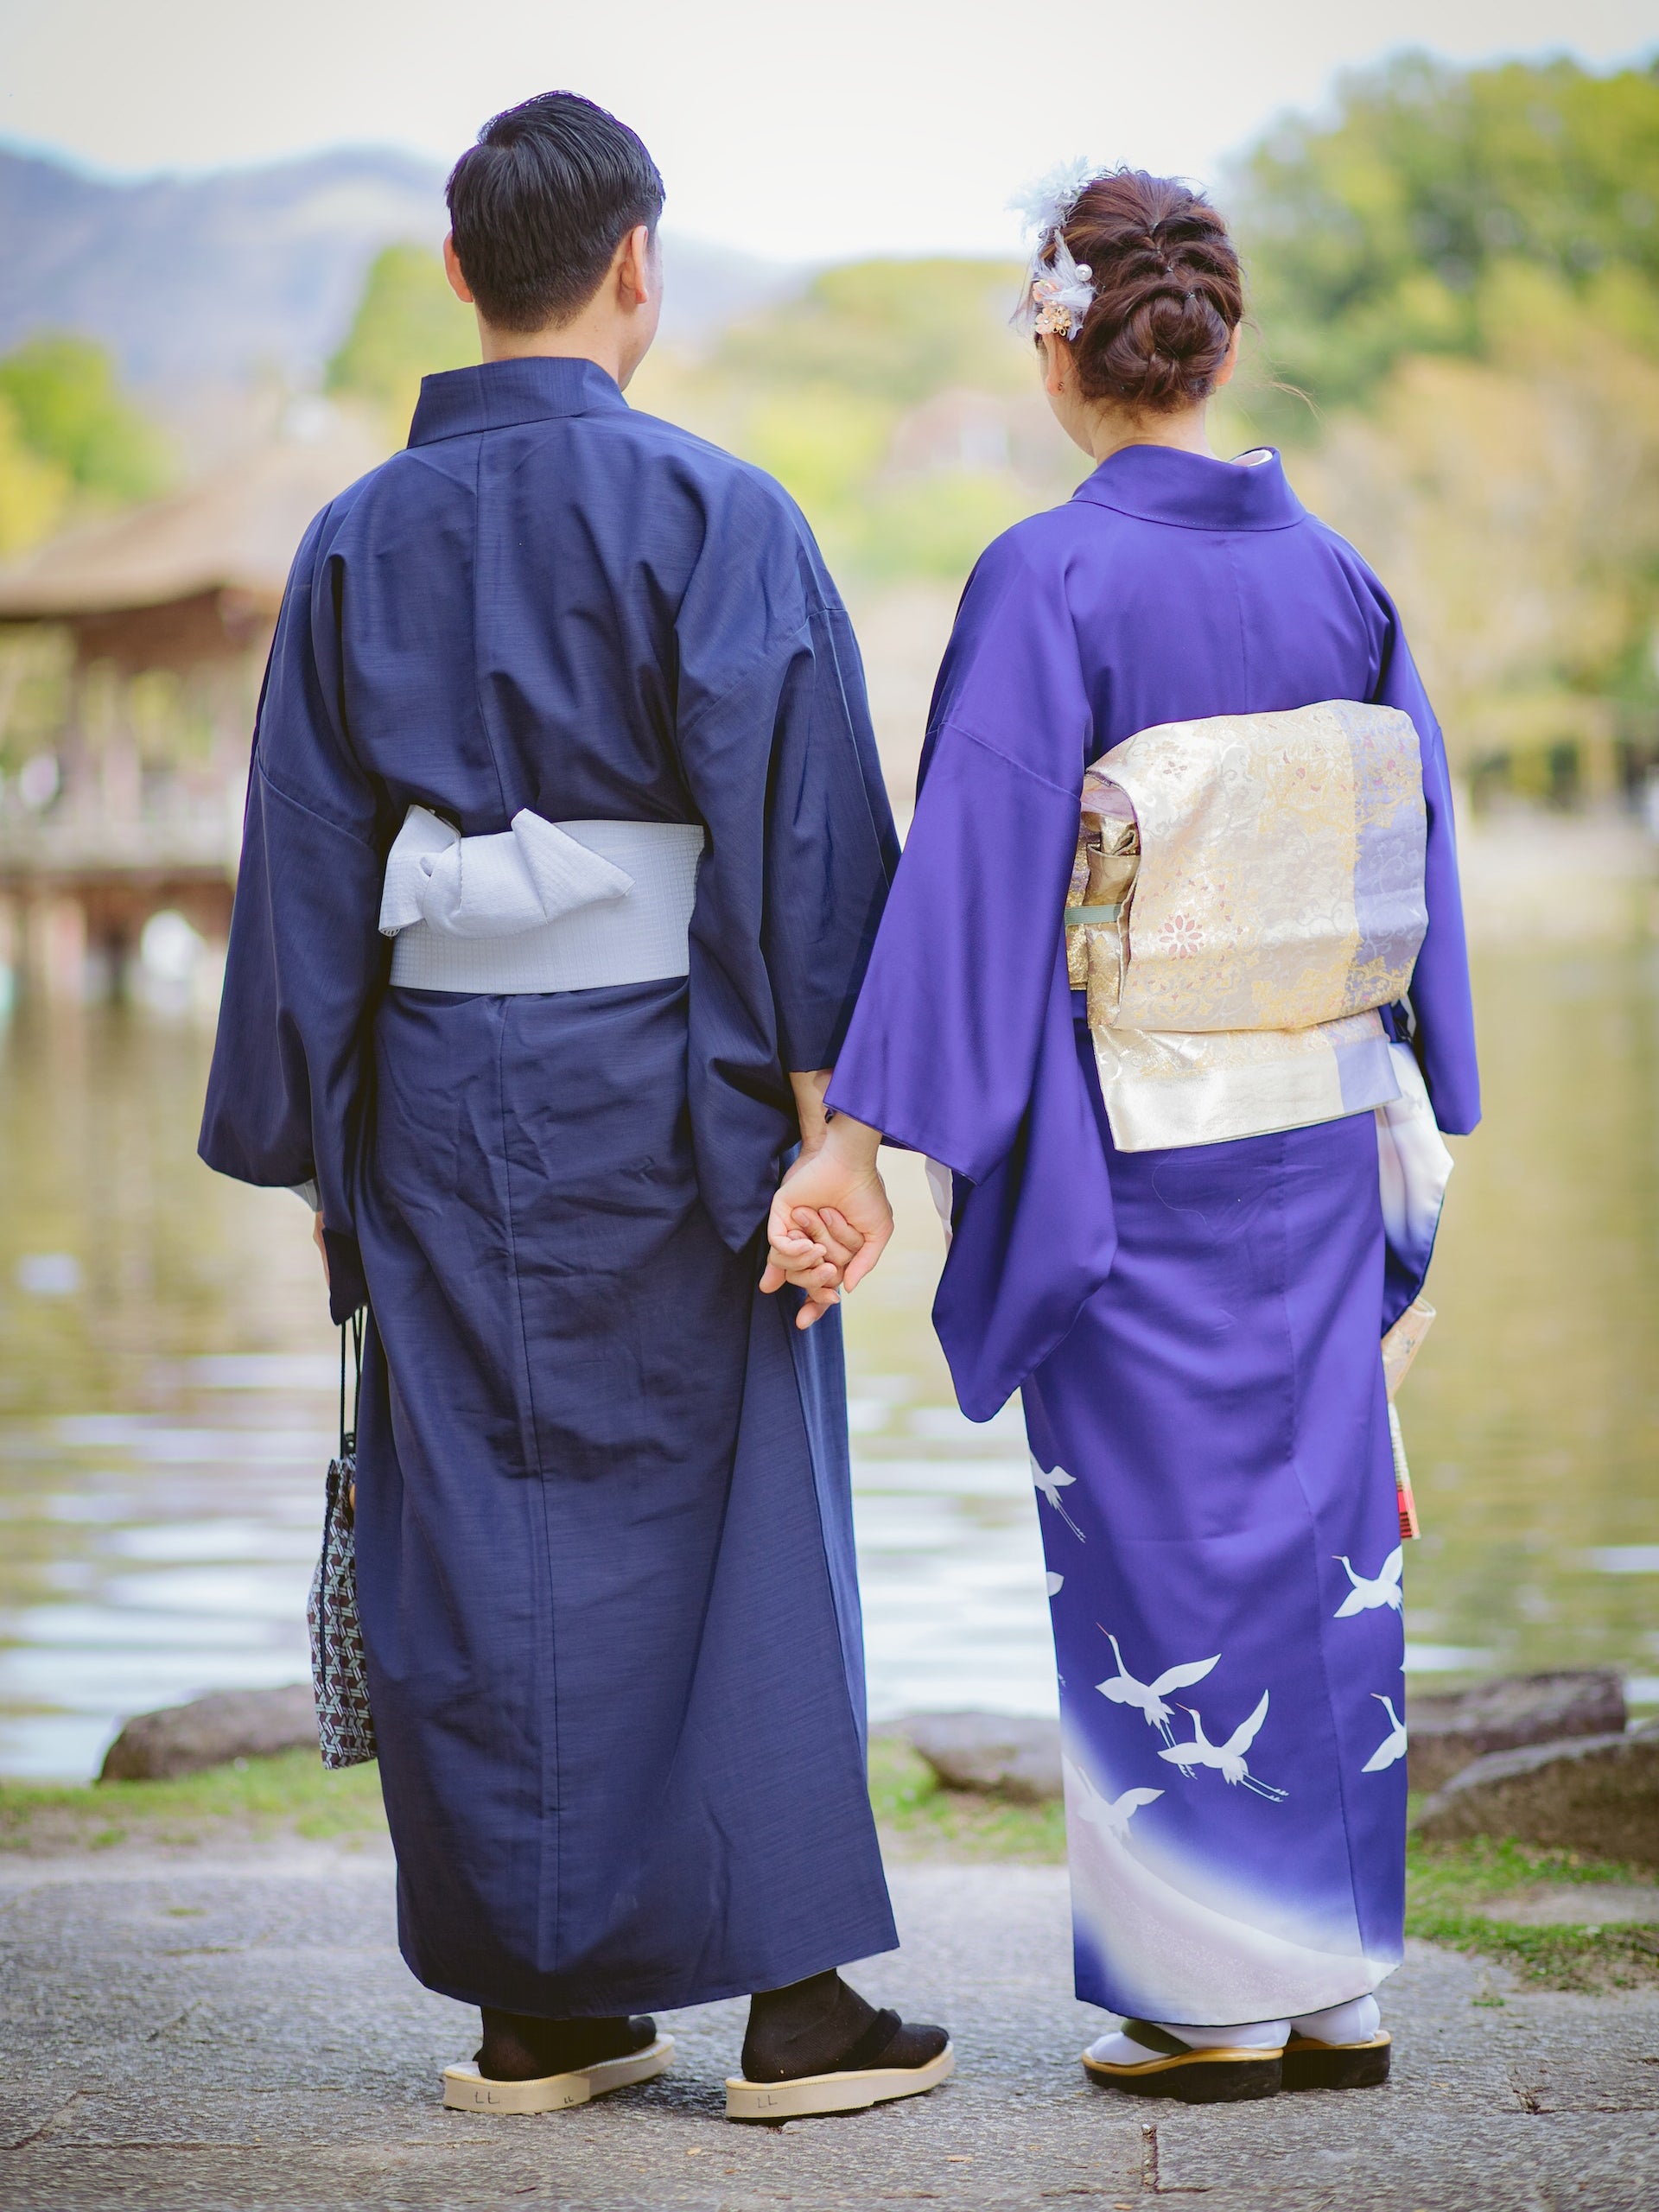 Kimono men and women